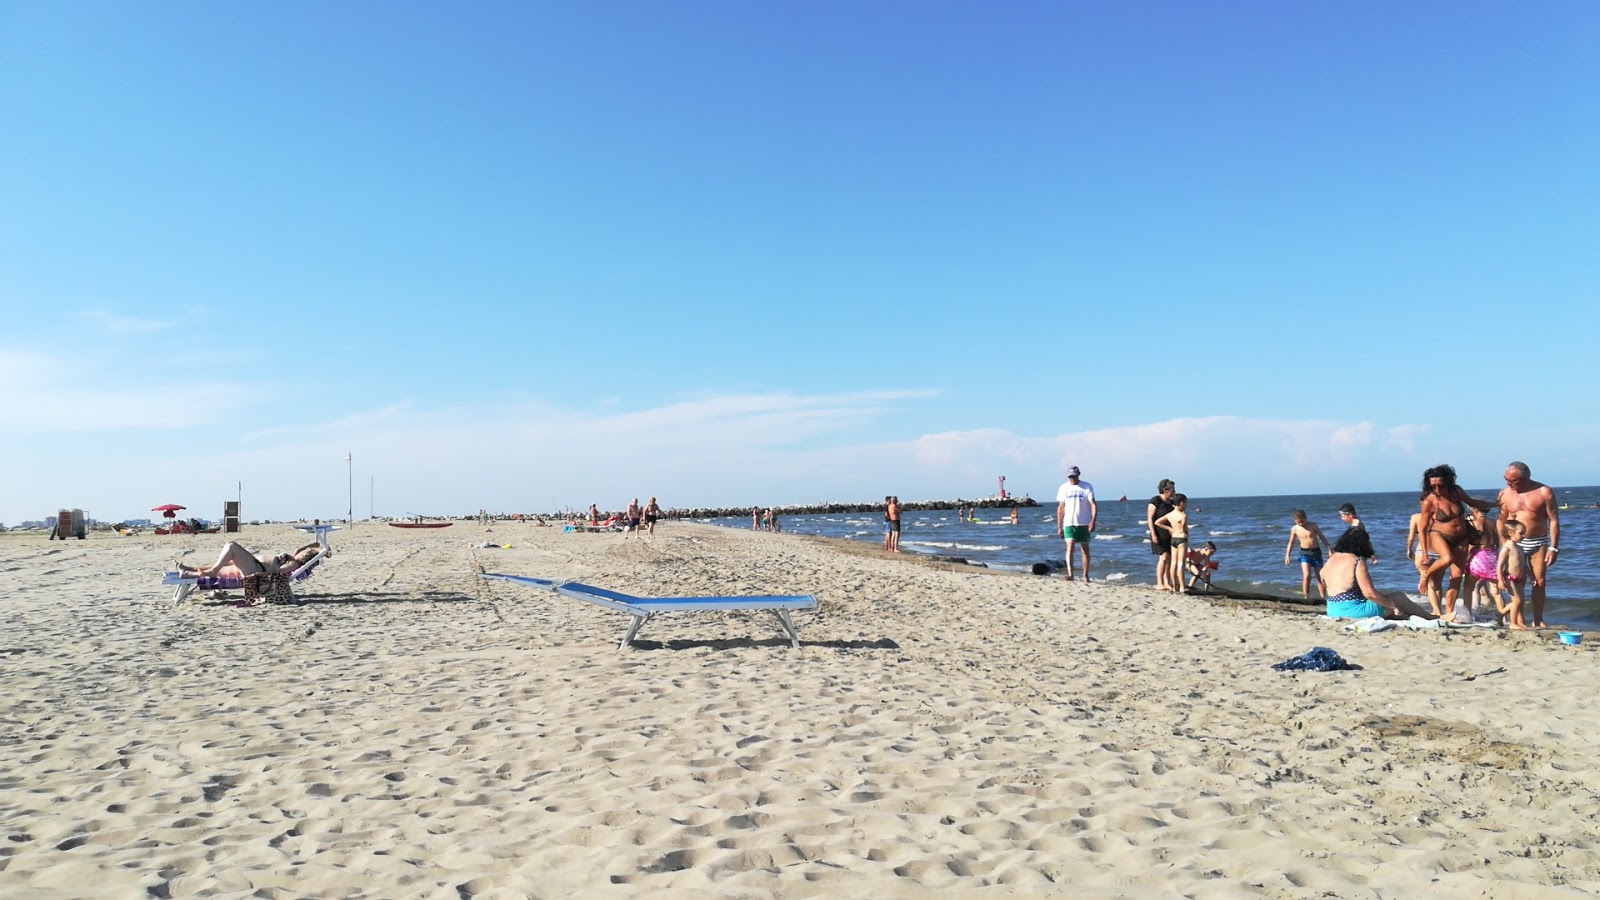 Fotografija Spiaggia Lido Degli Estensi z siv pesek površino